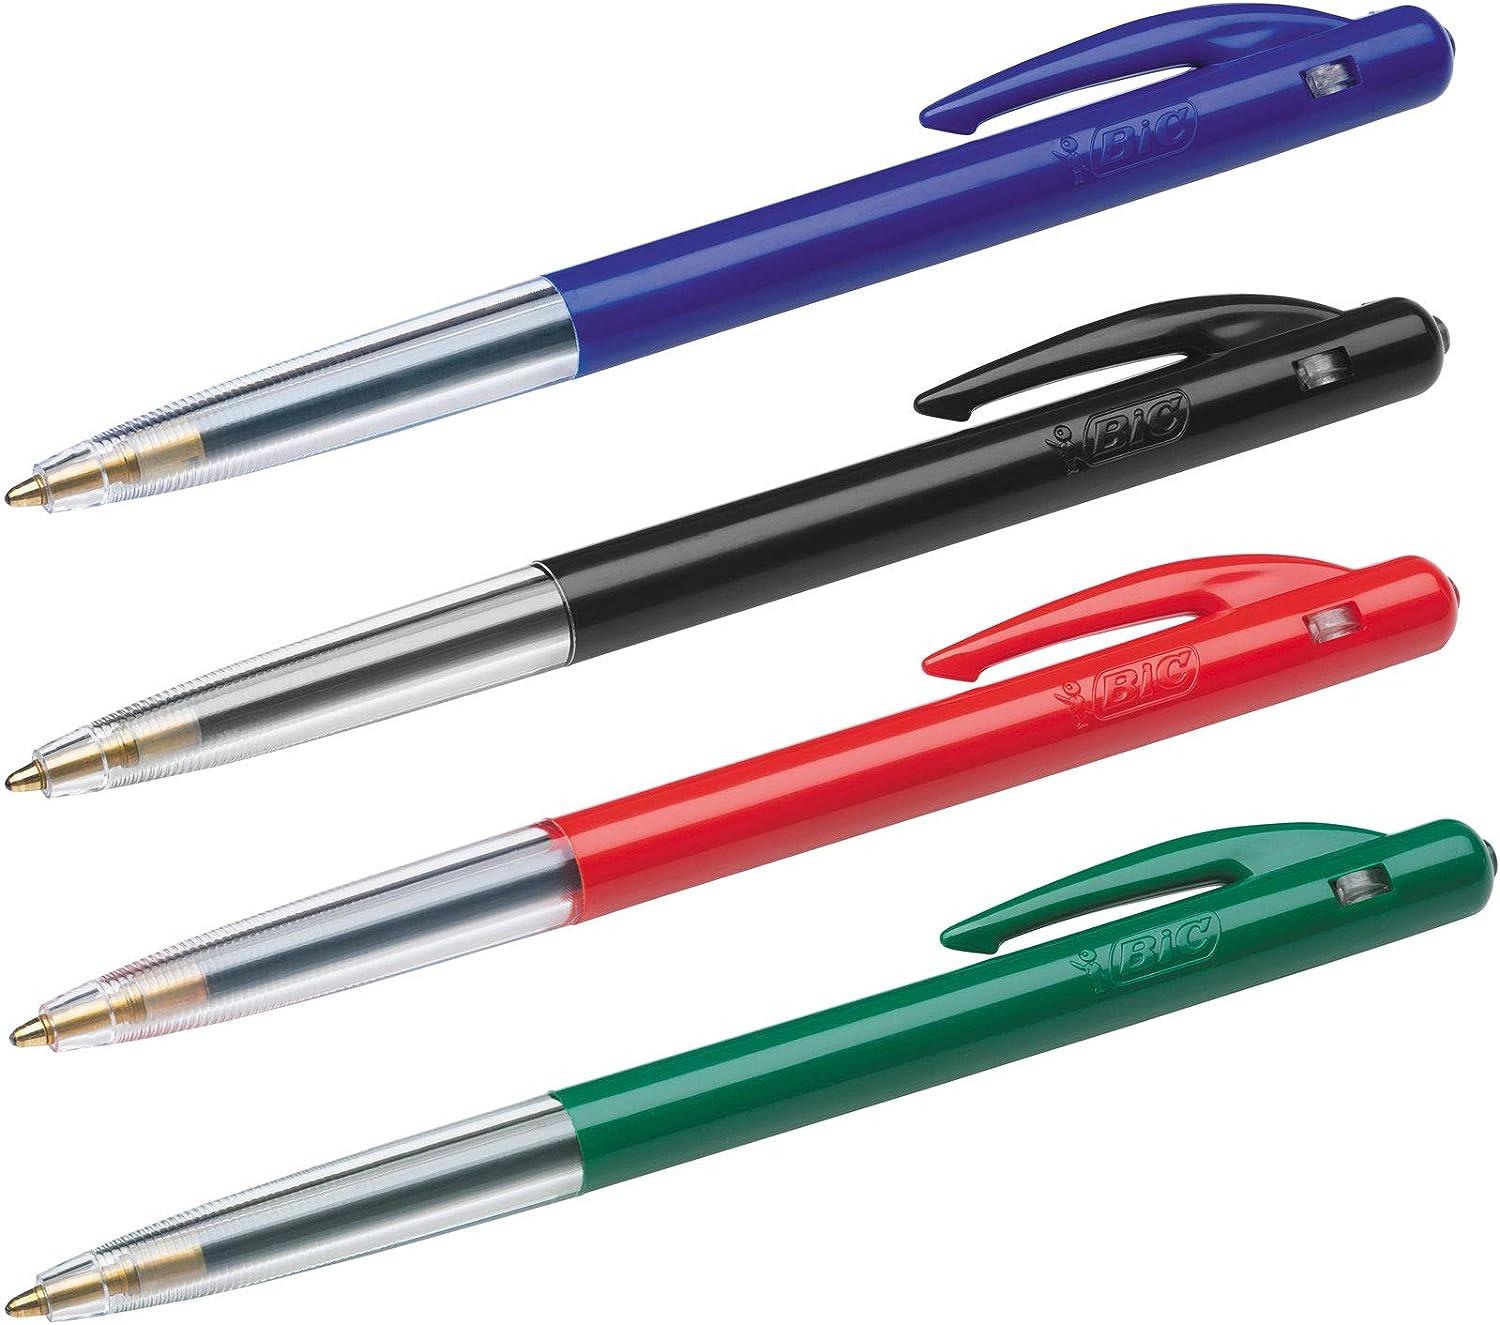 Bút bi dáng đẹp ngòi siêu êm BIC M10 Original Ballpoint Pens, cỡ ngòi 1.0mm, Hàng chuẩn Pháp, 1 cây màu xanh dương